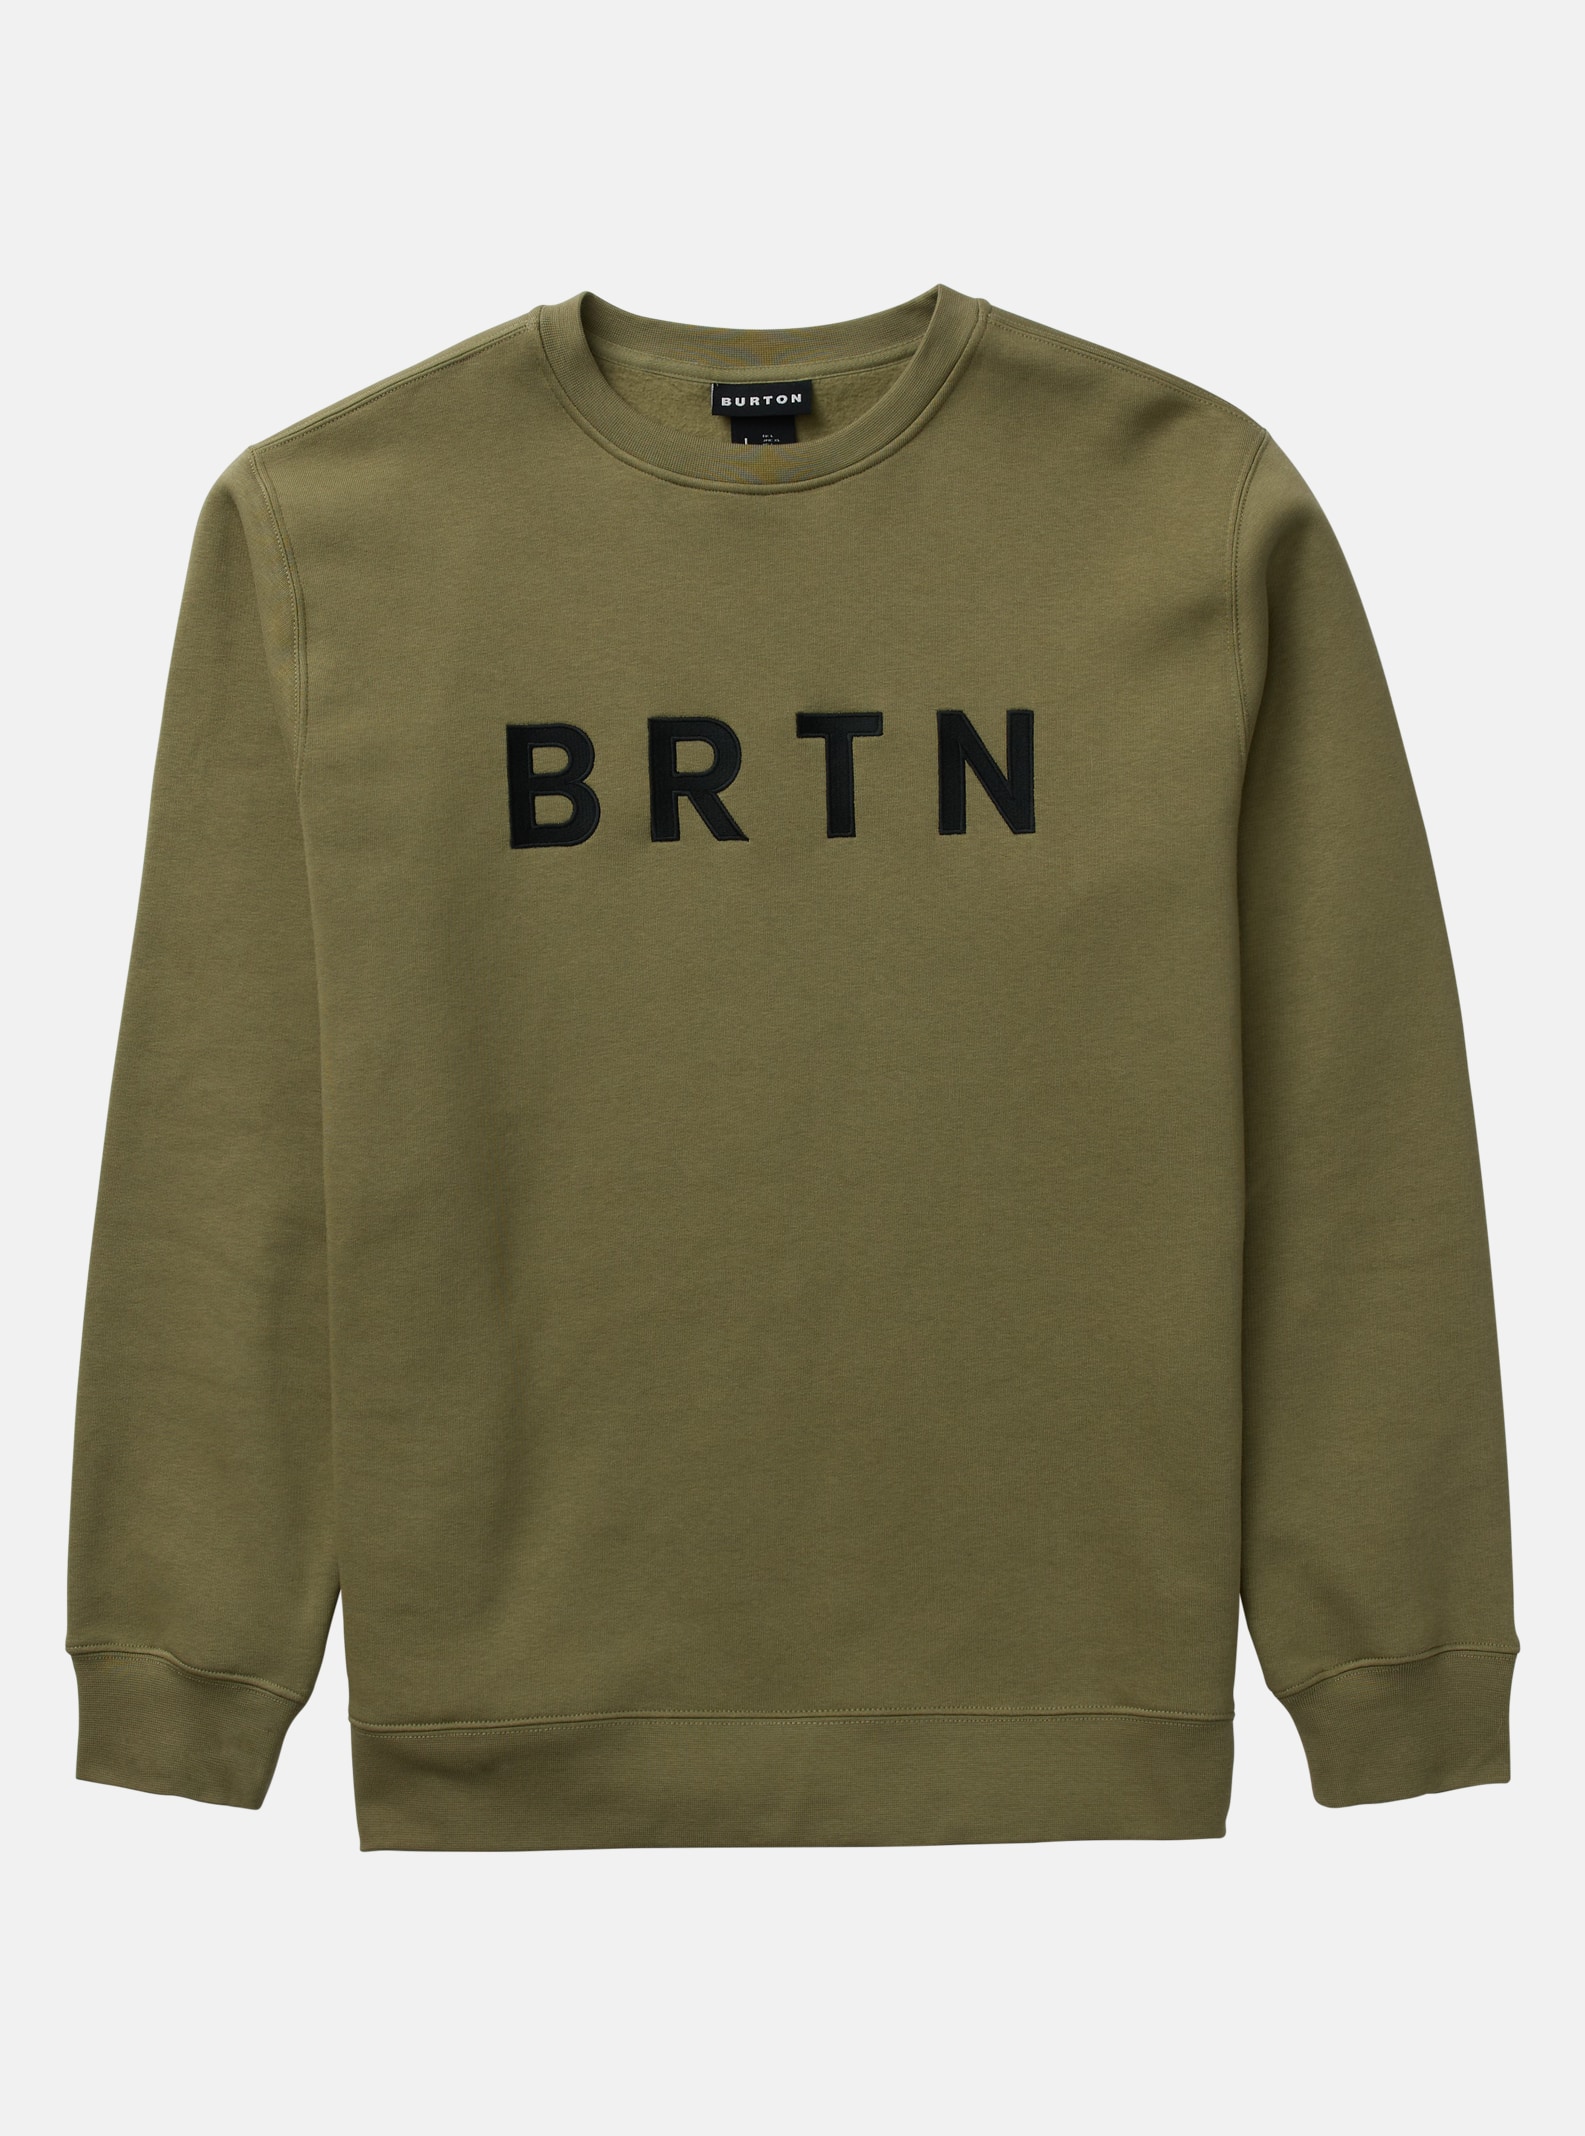 Burton Sweatshirt - BRTN Crewneck, Forest Moss, S